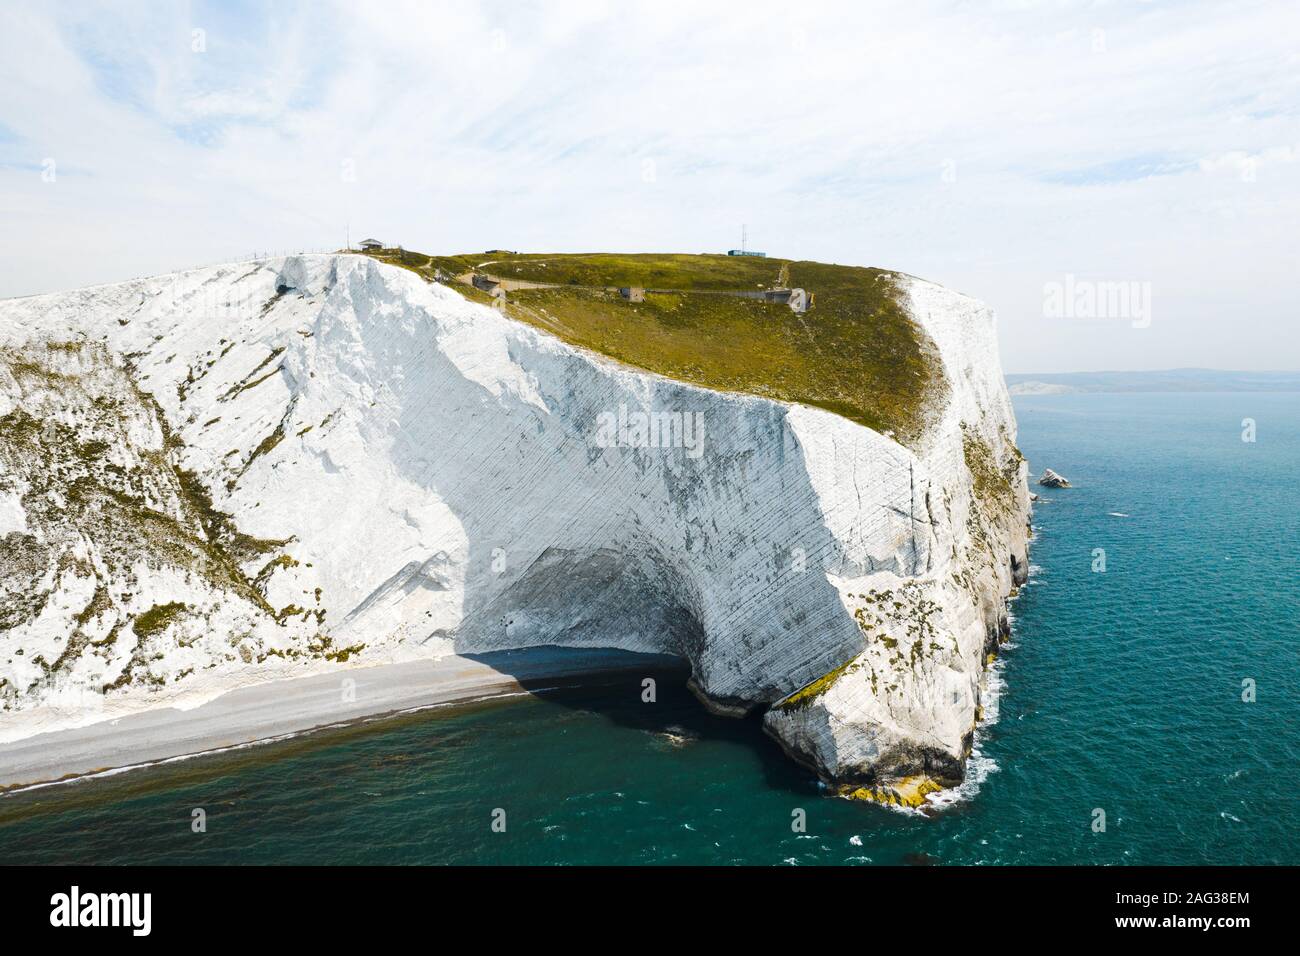 Belle photo de l'île de Wight sous la lumière ciel bleu clair Banque D'Images